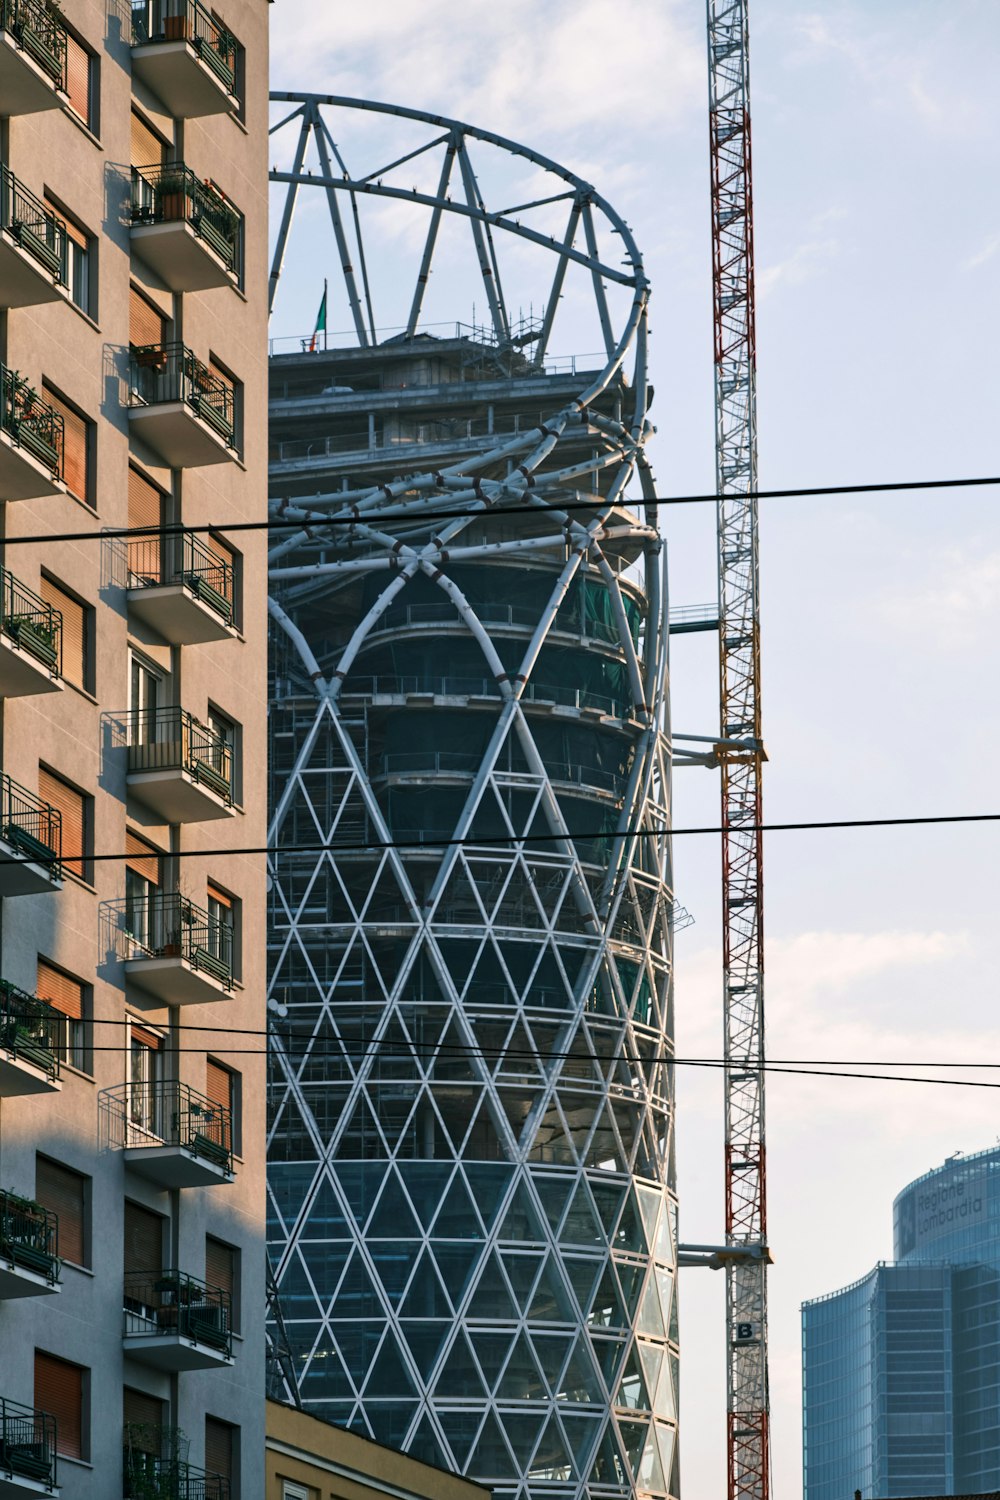 Torre di metallo grigio vicino a un edificio in cemento marrone durante il giorno